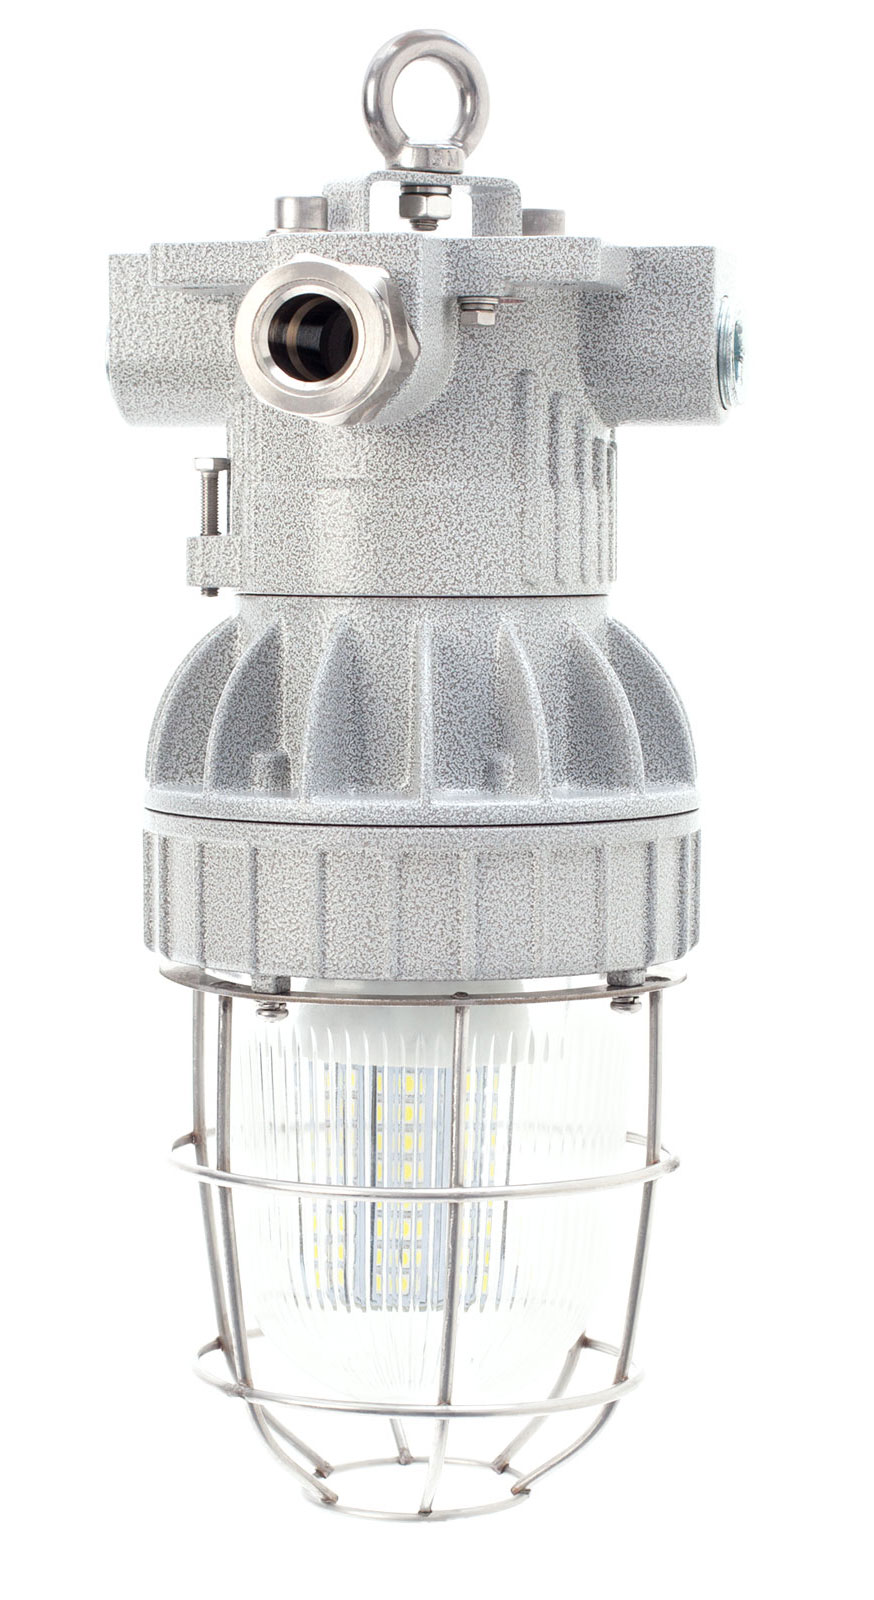 Взрывозащищенные светильники СГЖ01 (EV) под различные лампы с цоколем Е27